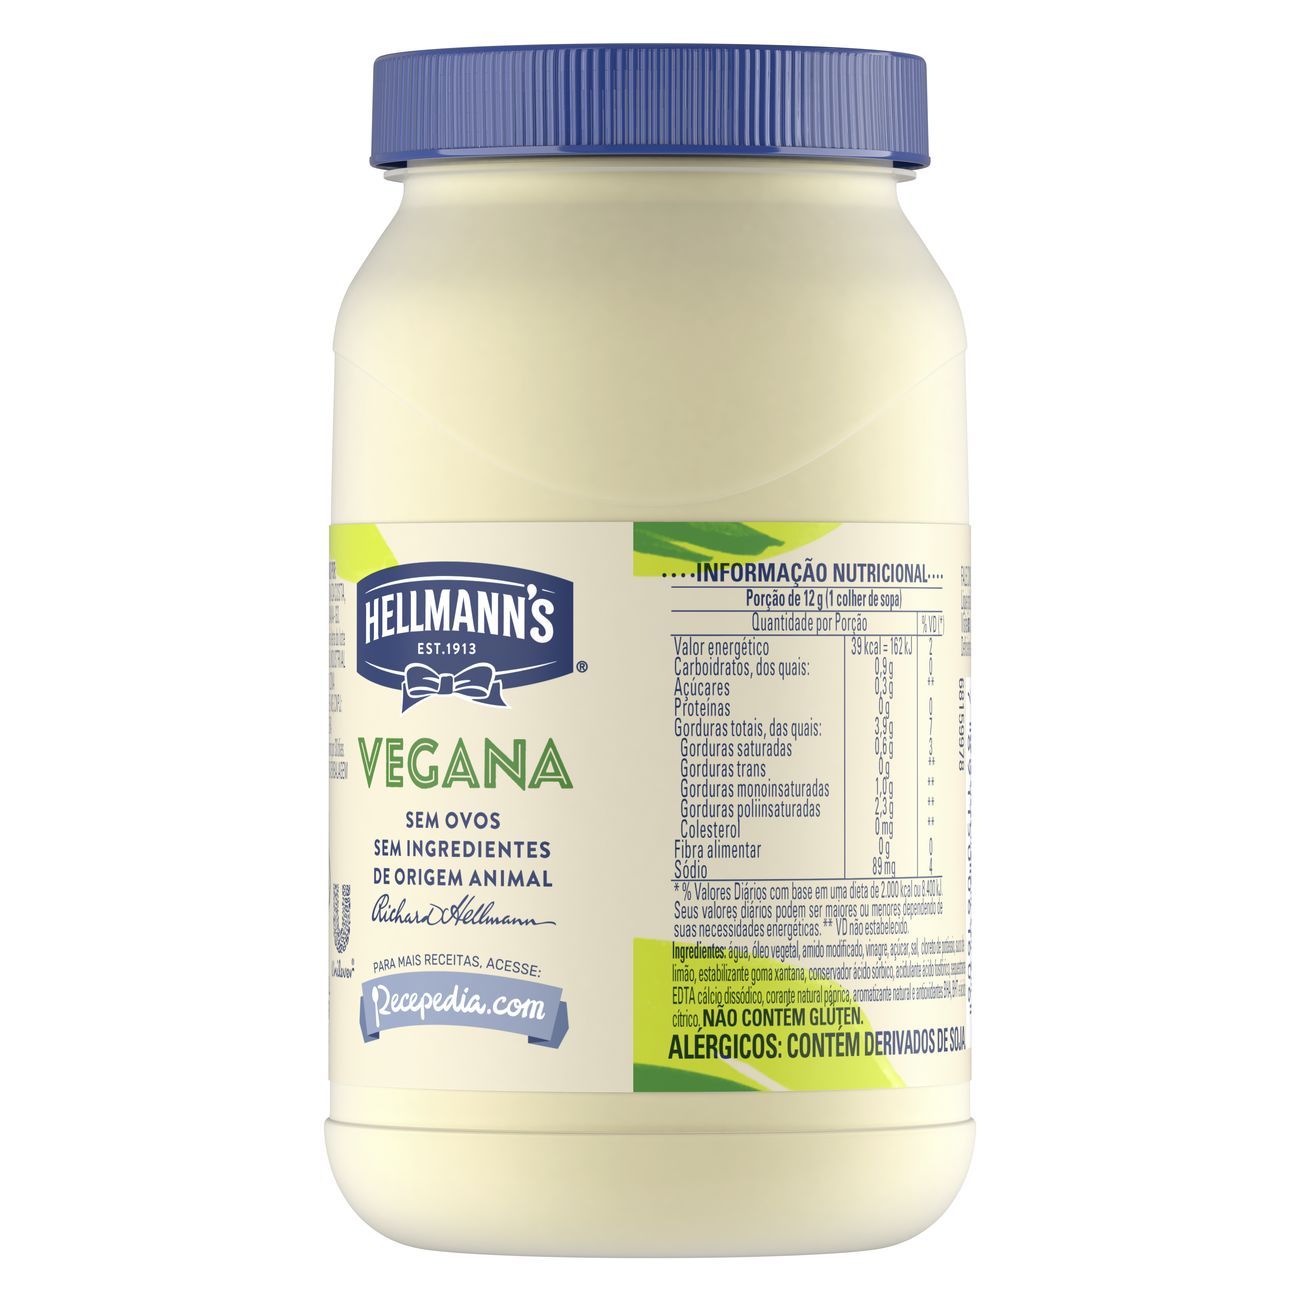 Hellmann's Vegana 250g